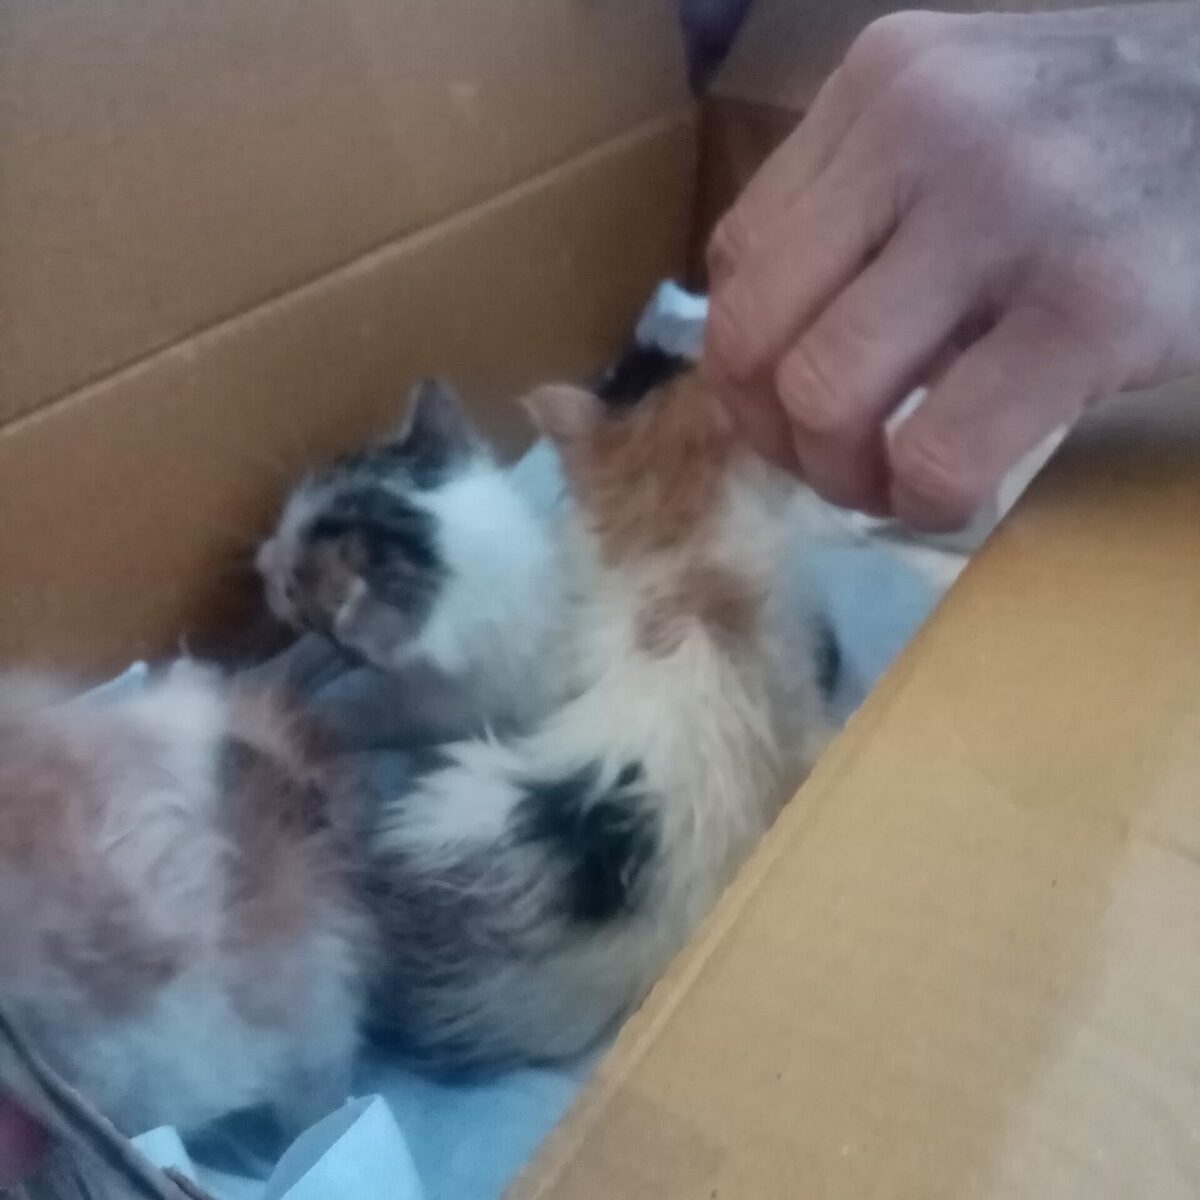 Βόλος: Έκλεισε σε κουτί τρία γατάκια και τα πέταξε στα σκουπίδια [Εικόνα] - ΕΛΛΑΔΑ